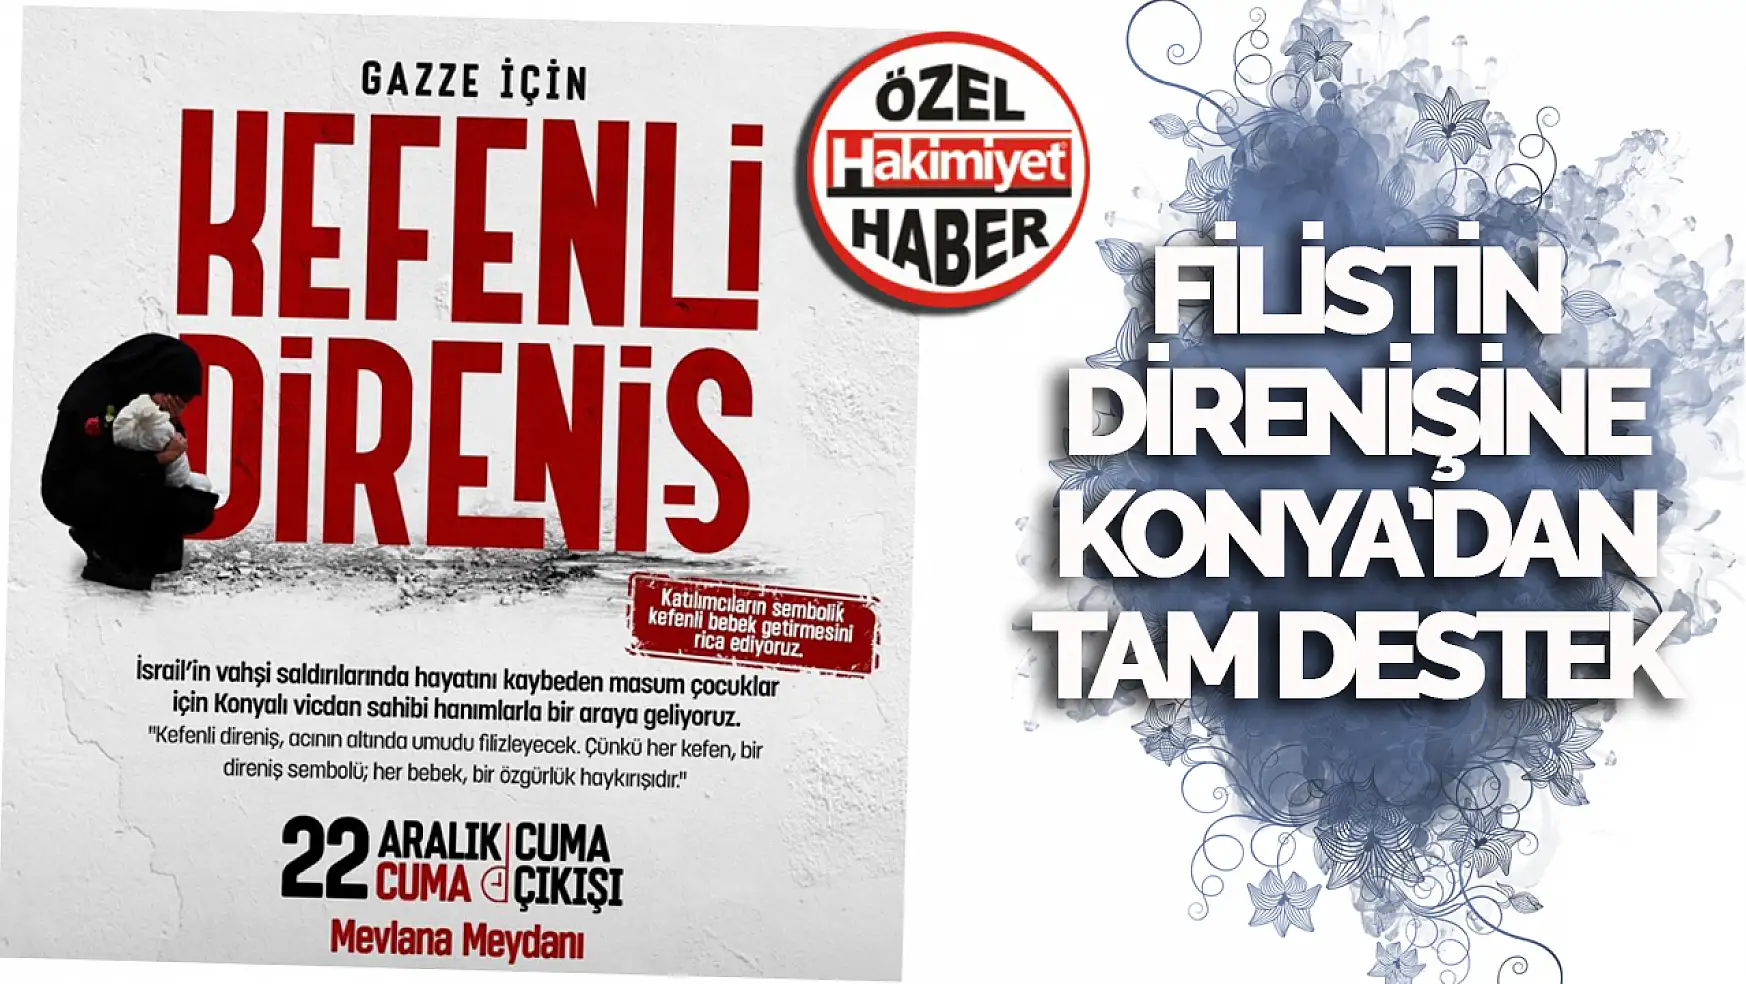 Konya'da gazze için kefenli direniş eylemi